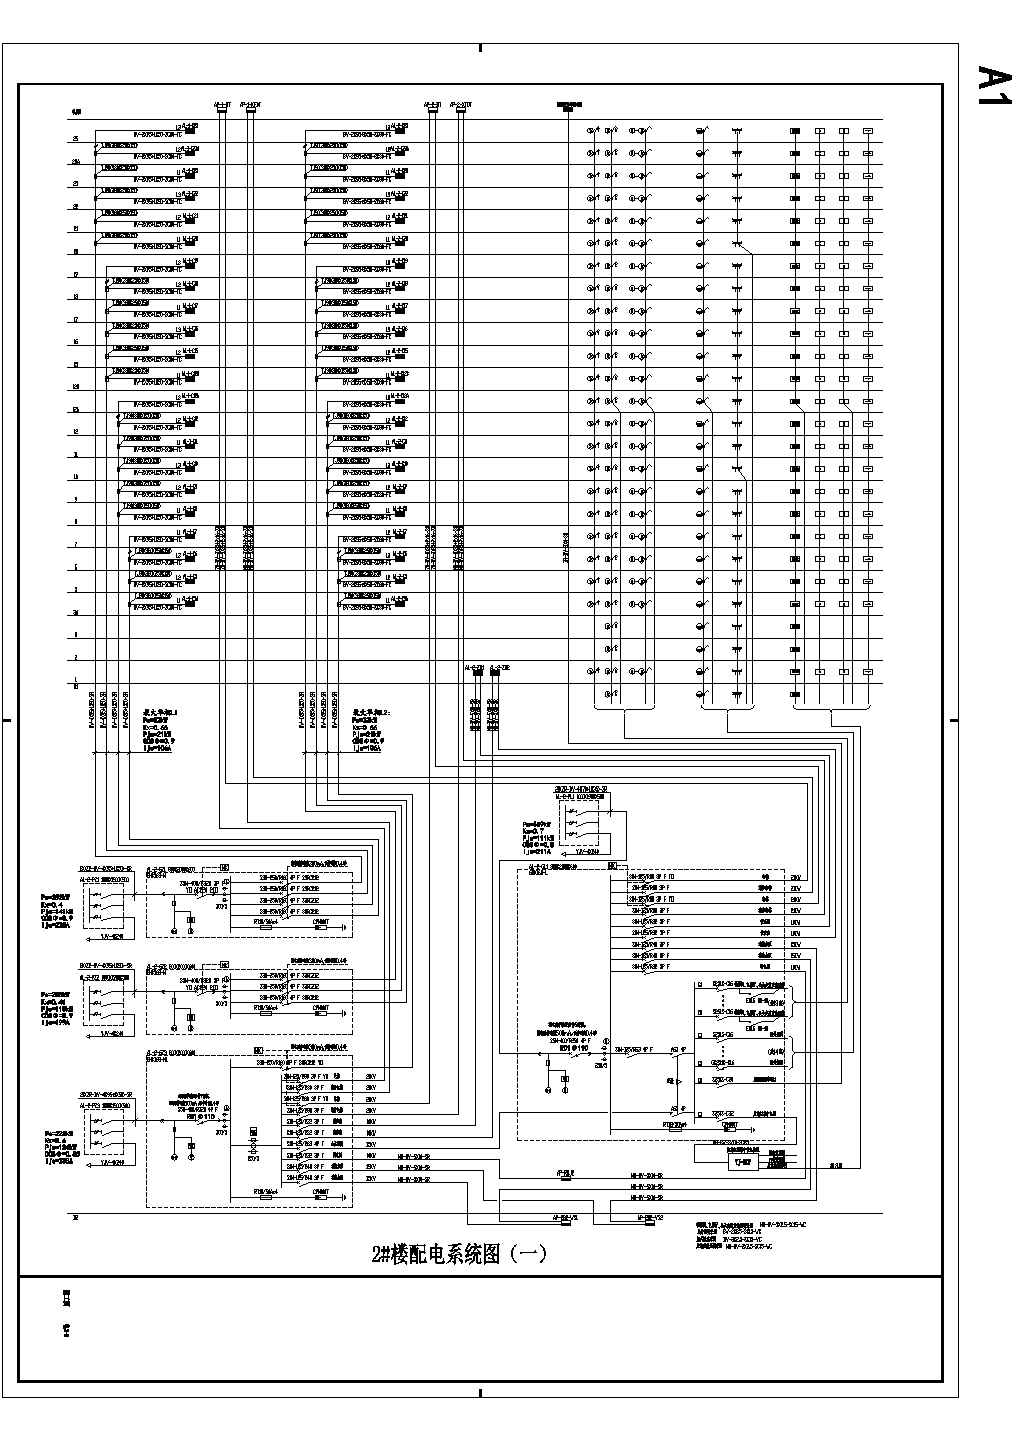 某地区高层建筑楼电气配电系统图纸